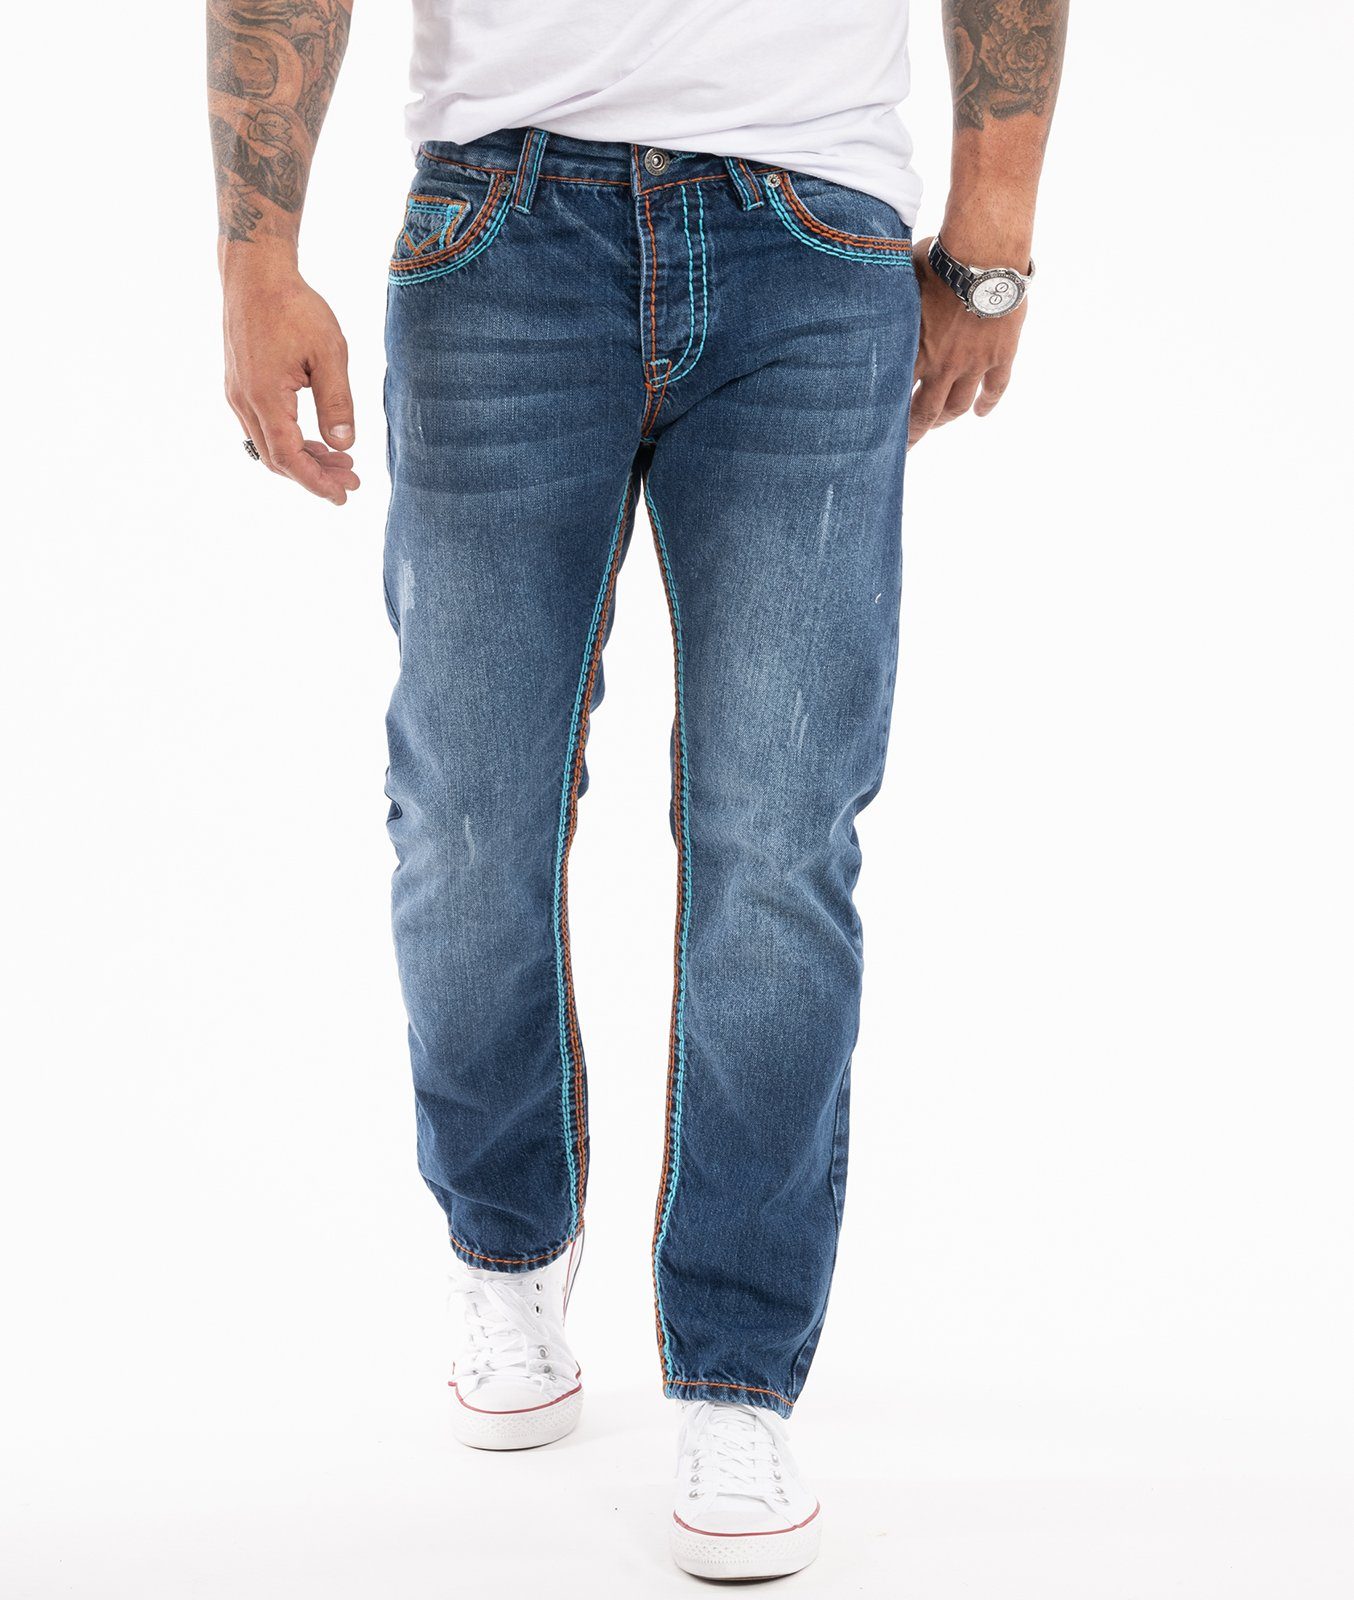 Herren Weite Jeans online kaufen | OTTO